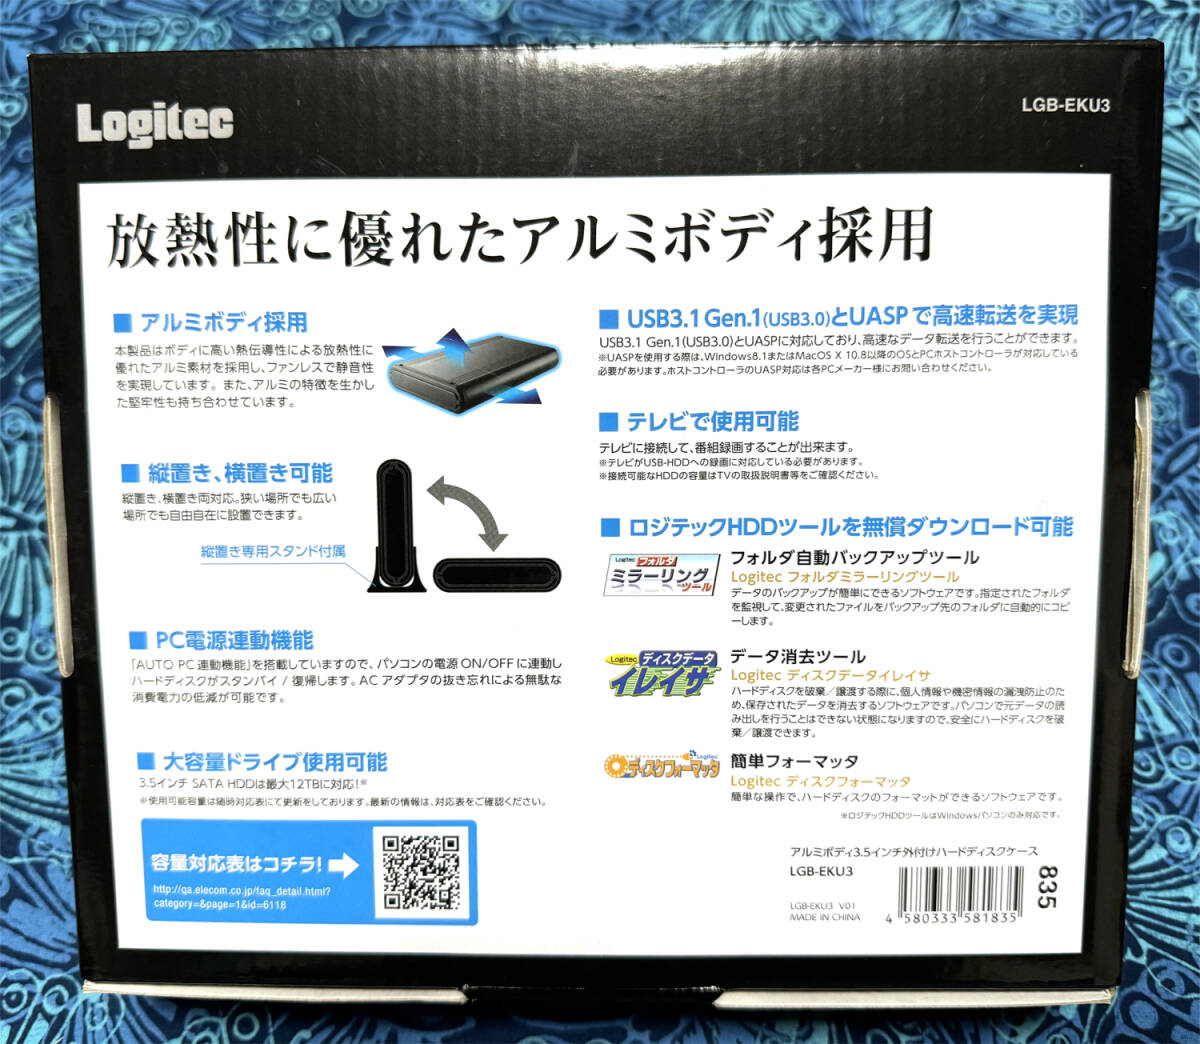 [ включая доставку ]Logitec Logitec LGB-EKU3 USB3.1 Gen1 USB3.0 HDD кейс б/у 